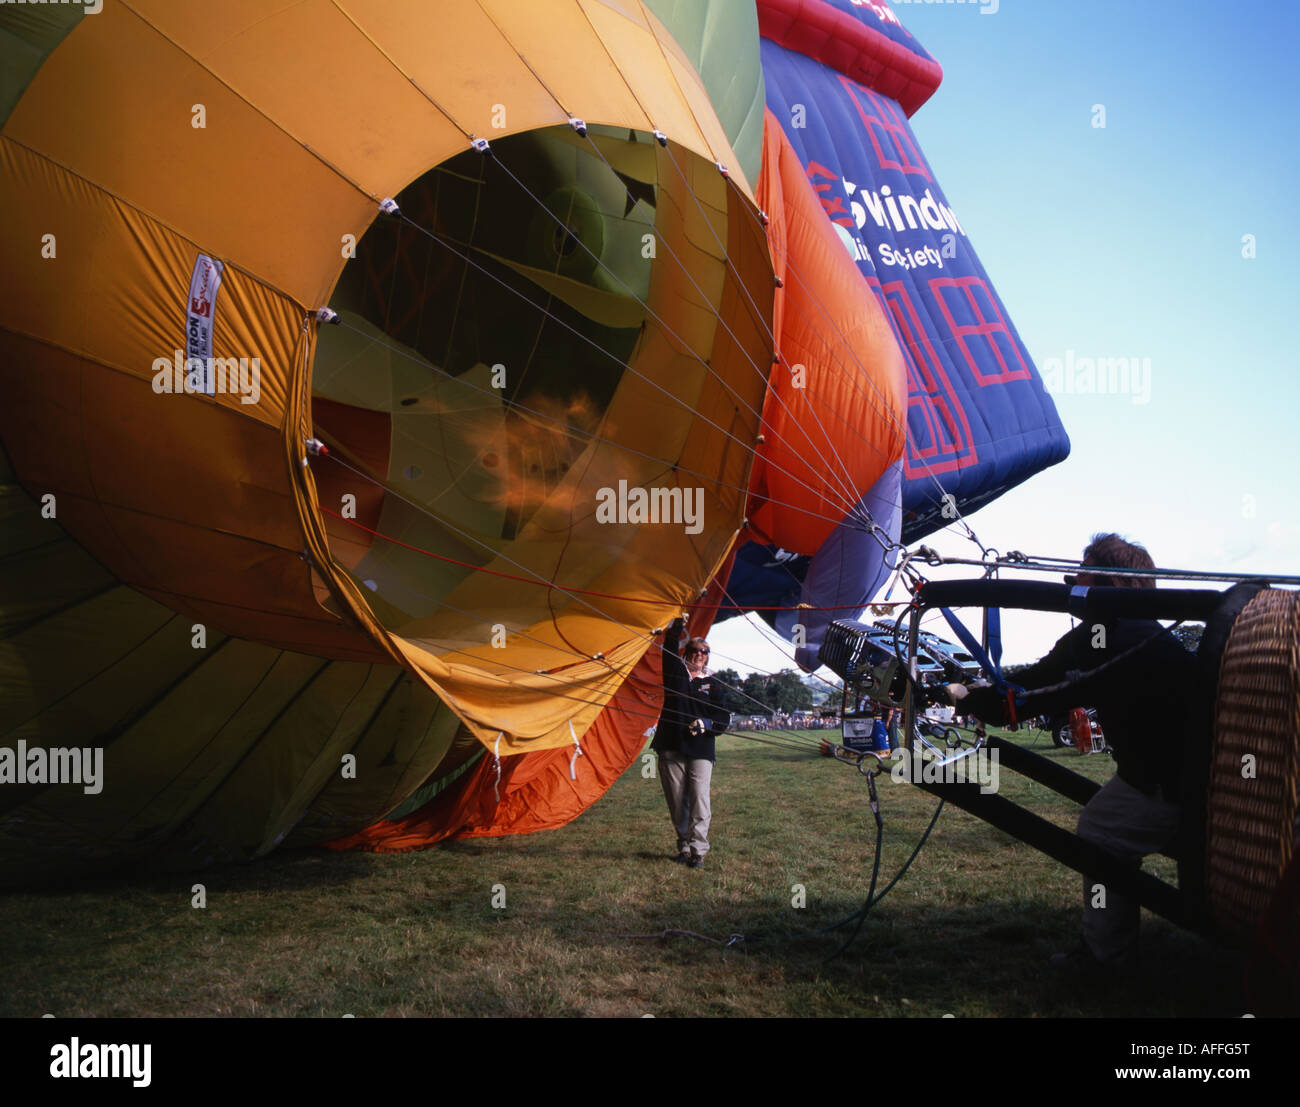 Heißluft-Ballon-Pilot feuert die Brenner zünden einen Jet von Propangas Aufblasen des Ballons. Internationale Ballonfestival Stockfoto